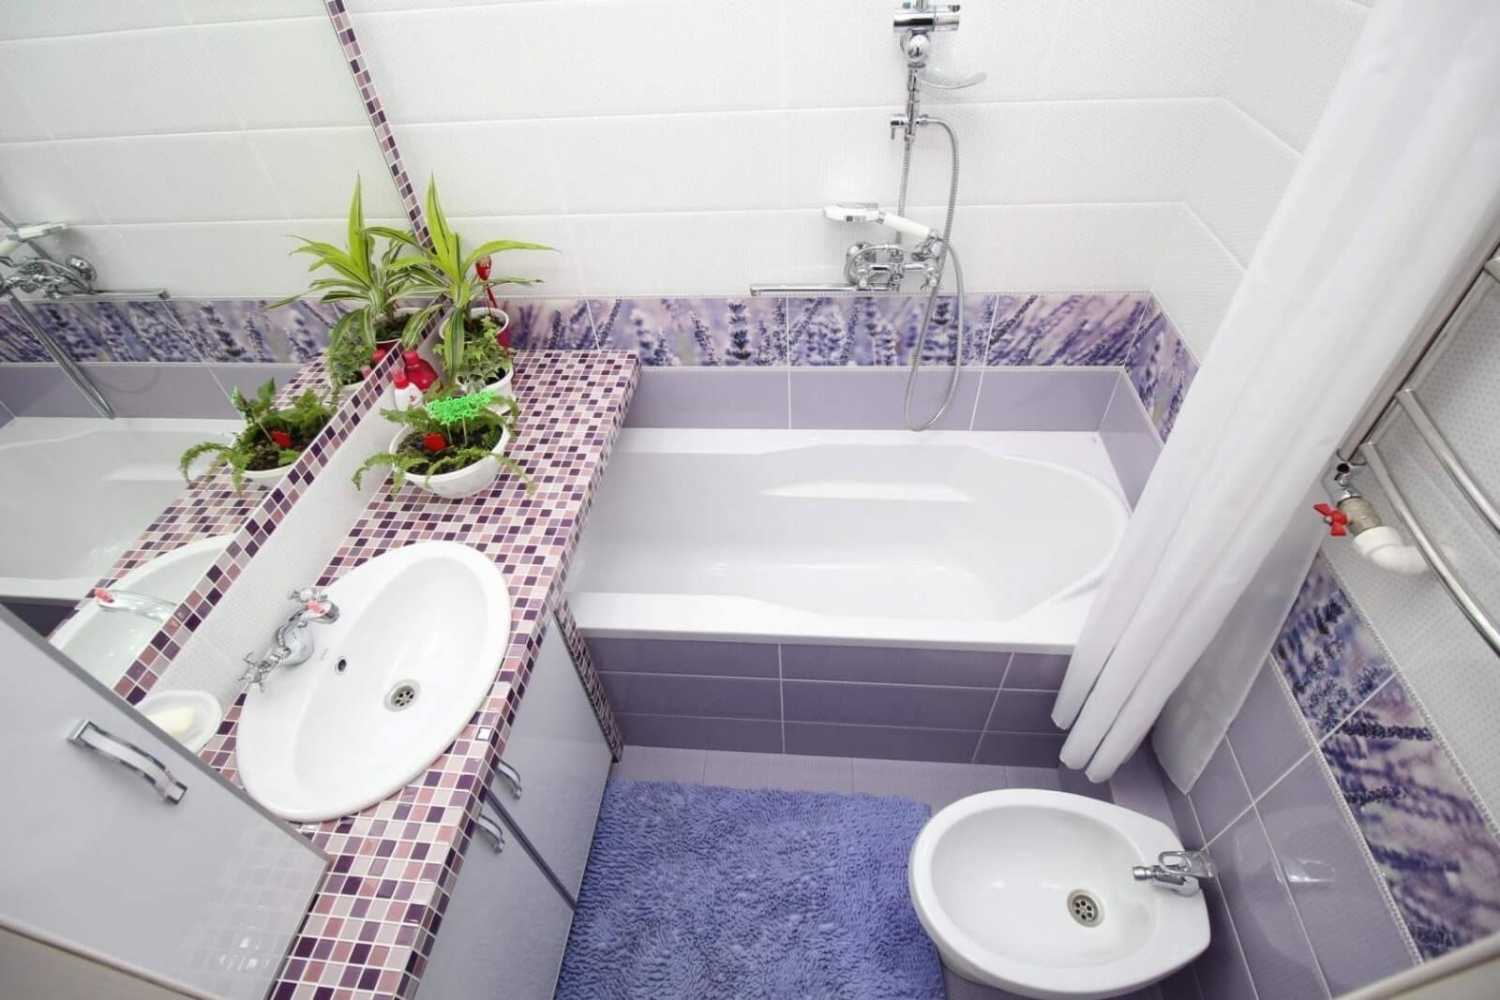 Разберём 7 правил дизайна ванных совмещенных с туалетом сразу по реальным фотографиям и заодно укажем какие ошибки там допущены 1 Обязательно несколько зон по стенам с разной плиткой Заметьте, что на всех фото которые вам нравятся, используется больше 1ог